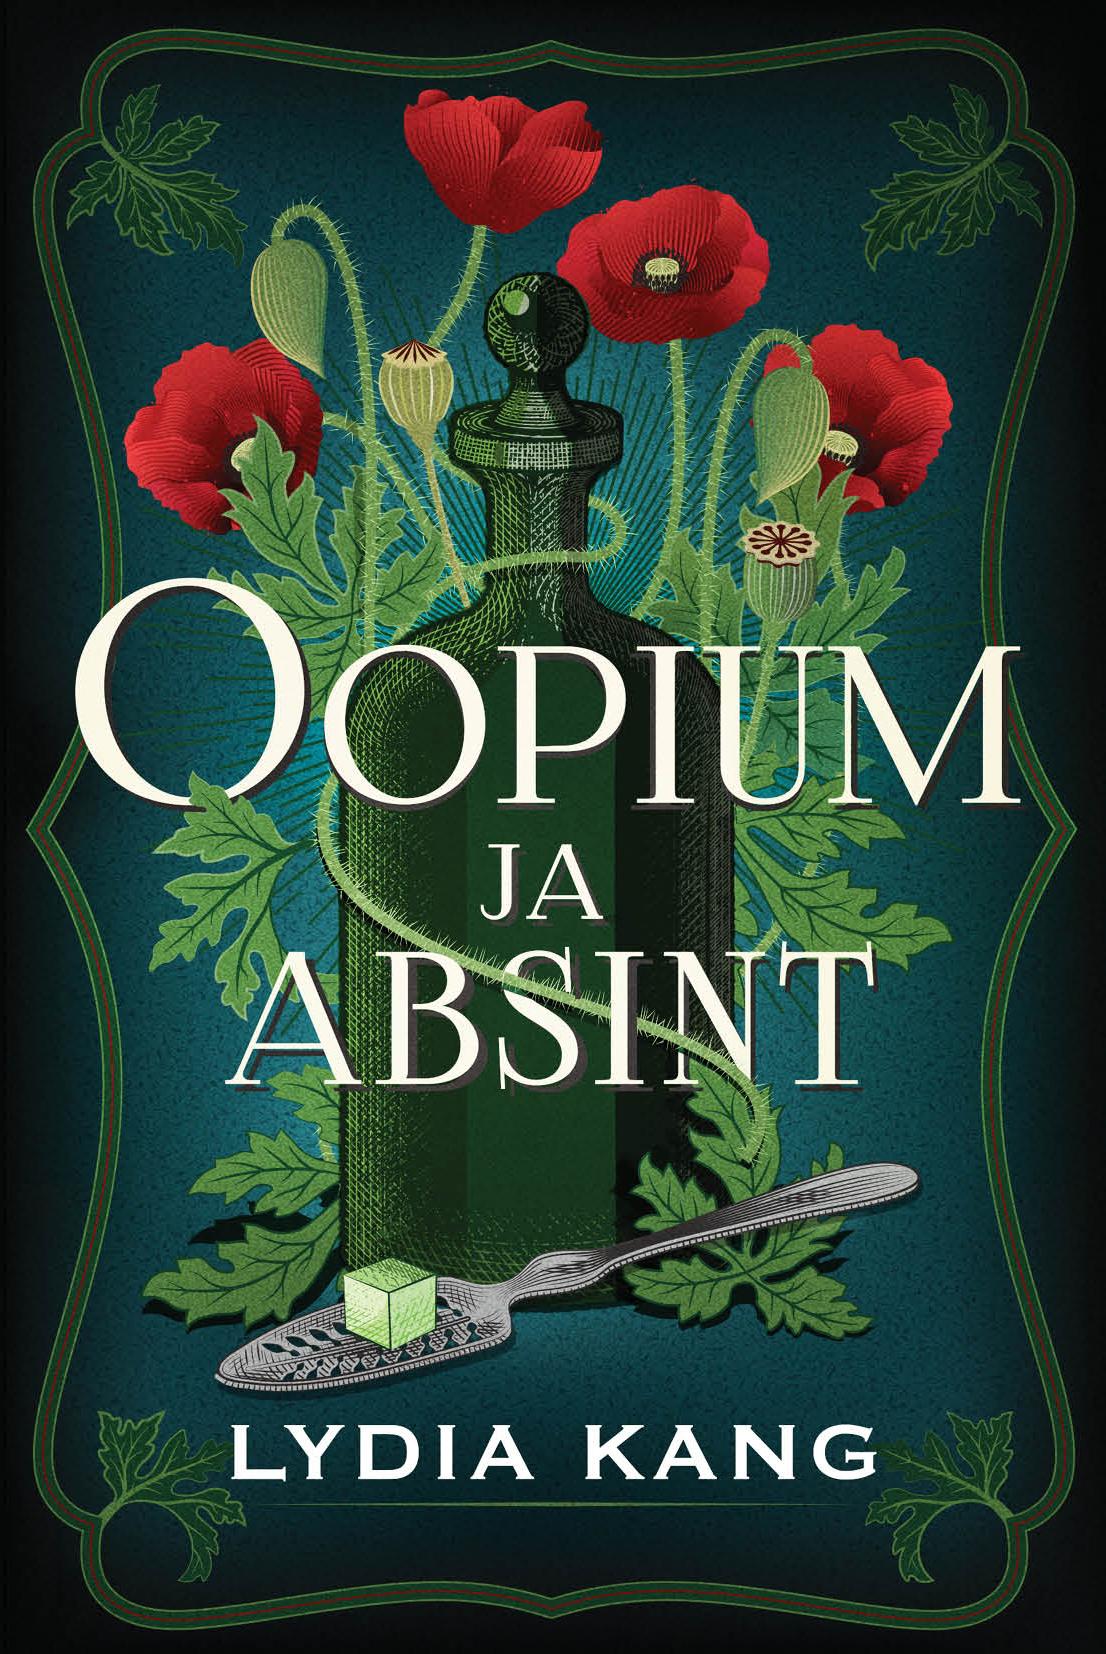 Oopium ja absint